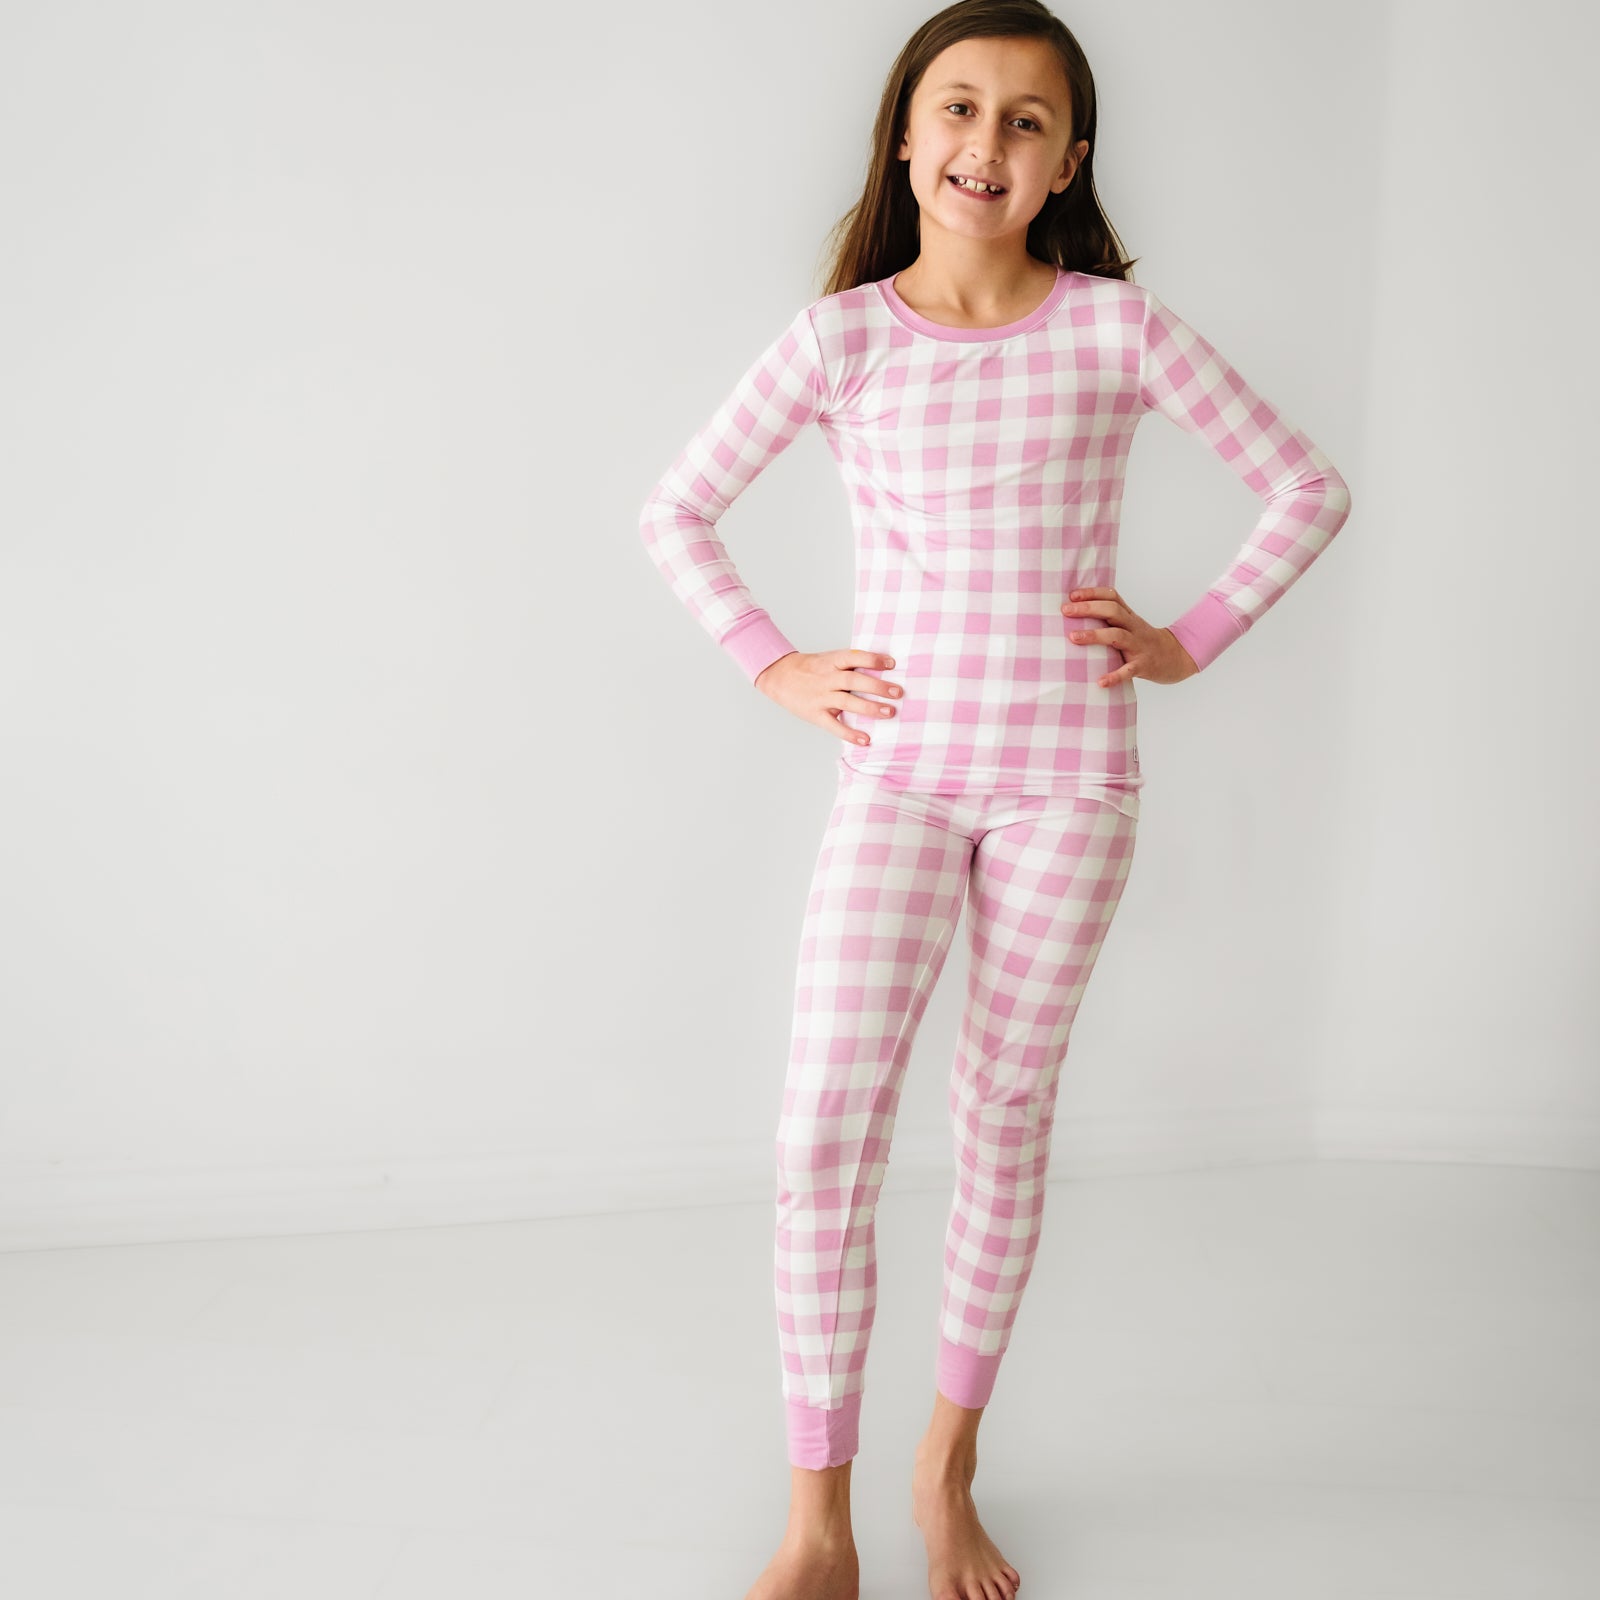 Child posing wearing a Pink Gingham two piece pajama set